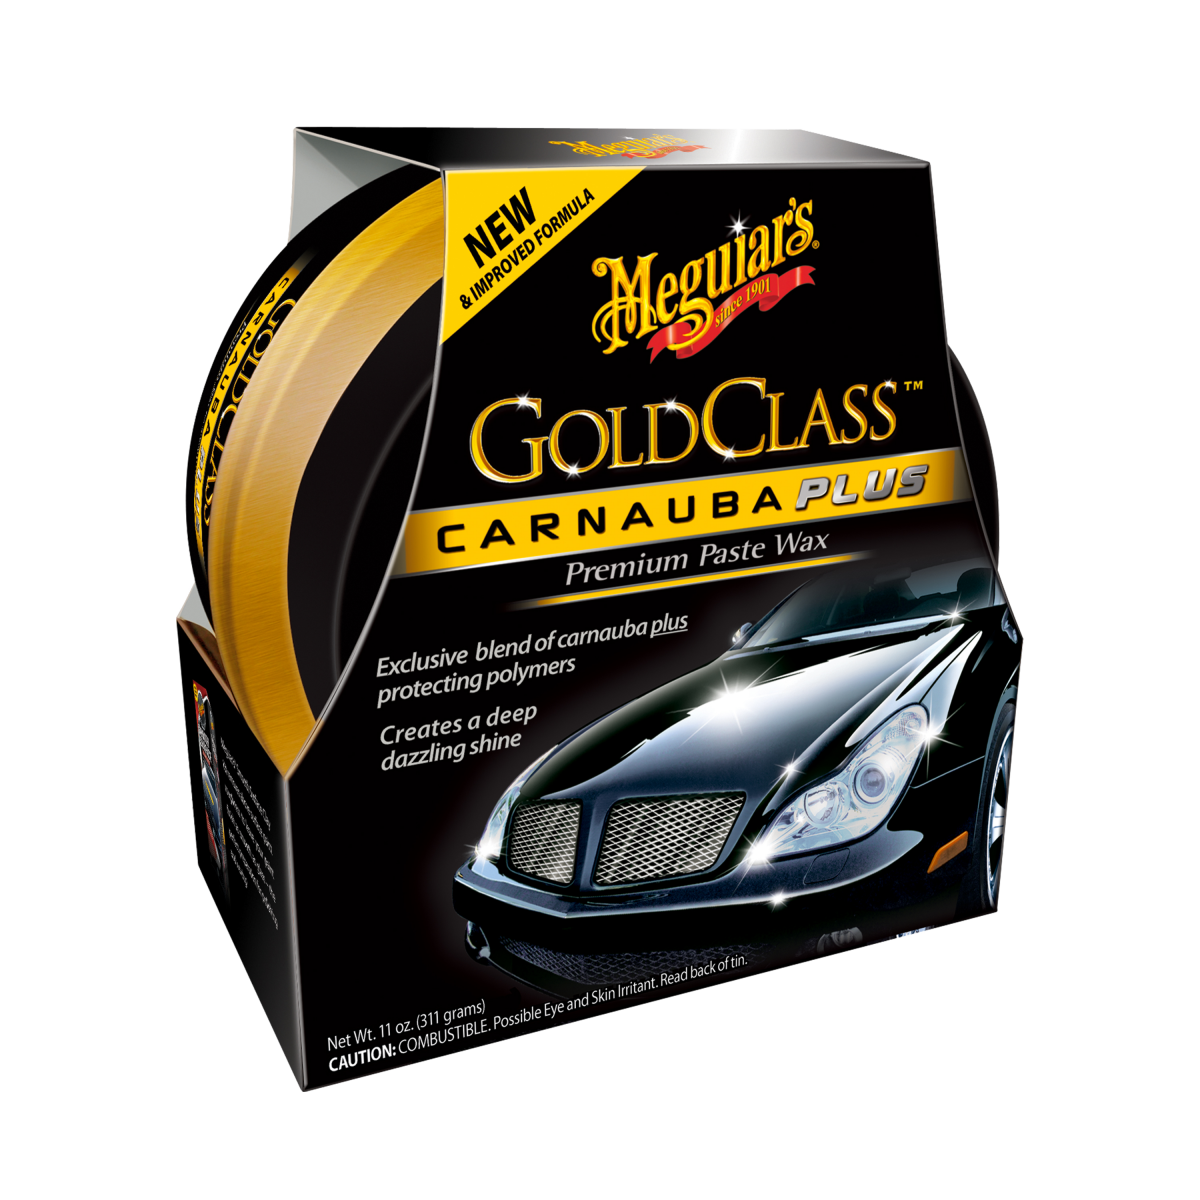  Meguiar's Gold Class Carnauba Plus Premium Paste Wax